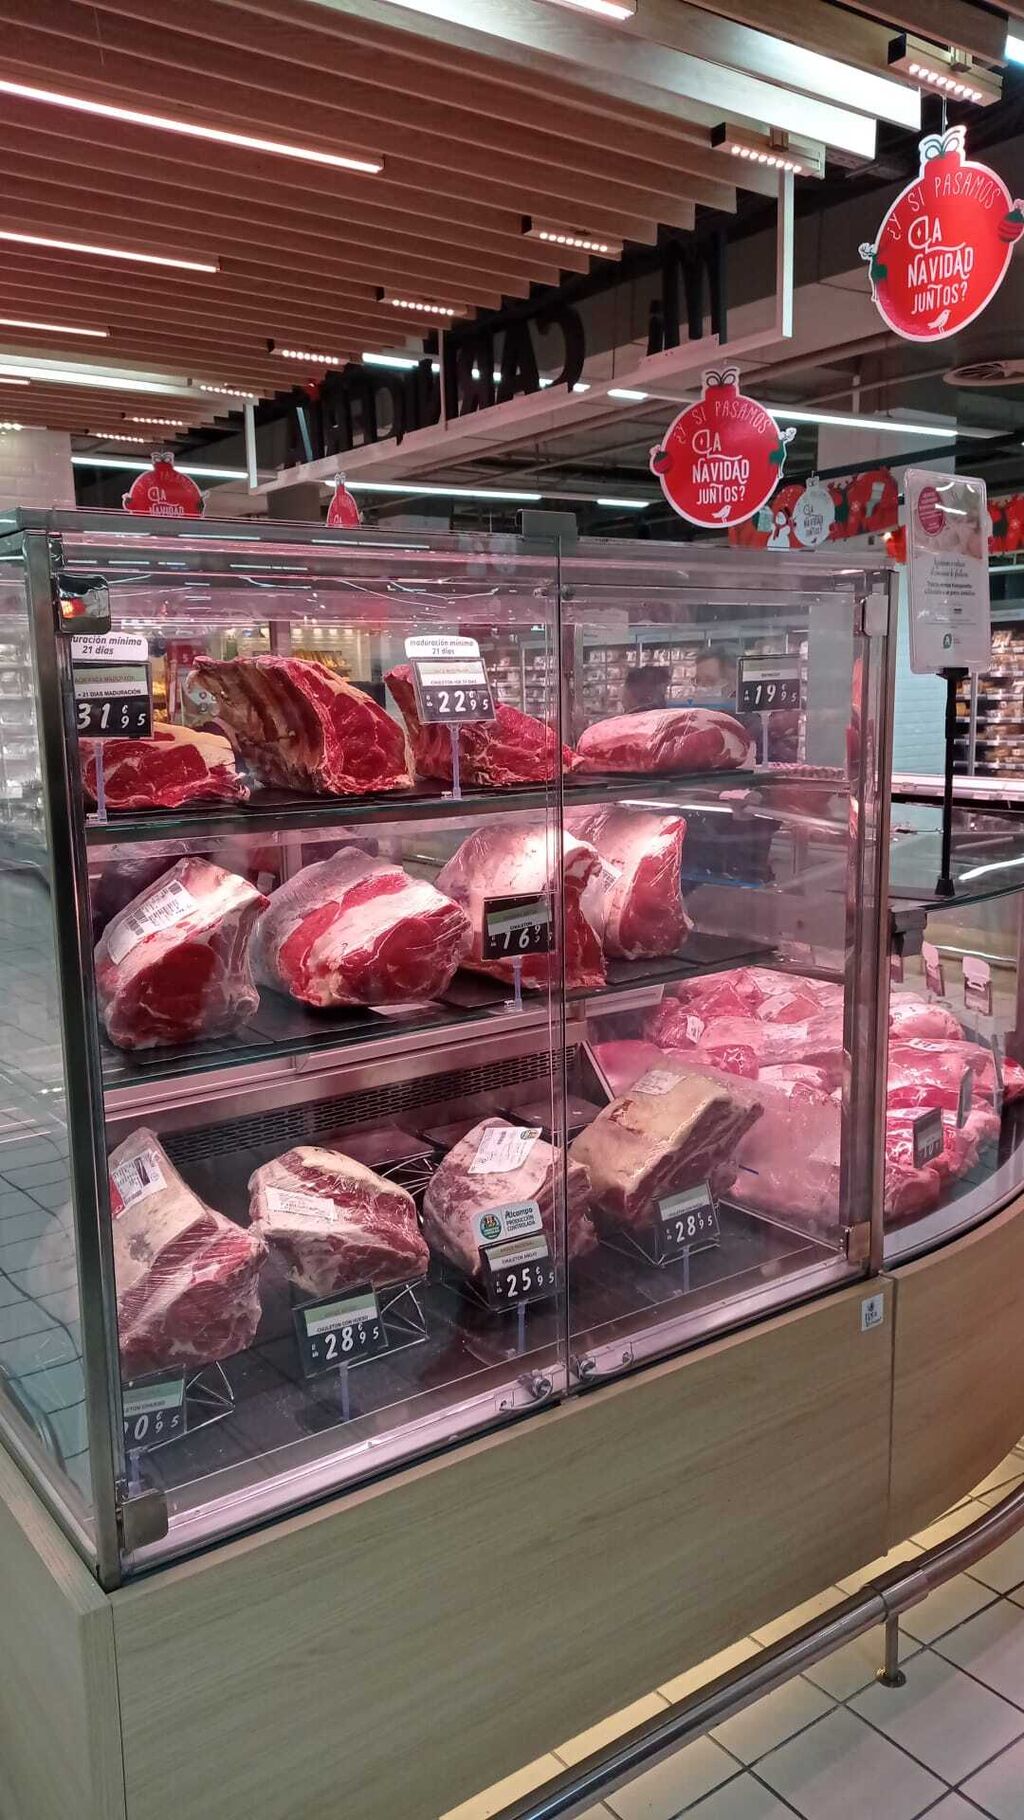 Zona de maduración de carnes, toda una apuesta gourmet que supone un paso más en la premiumización del producto fresco.